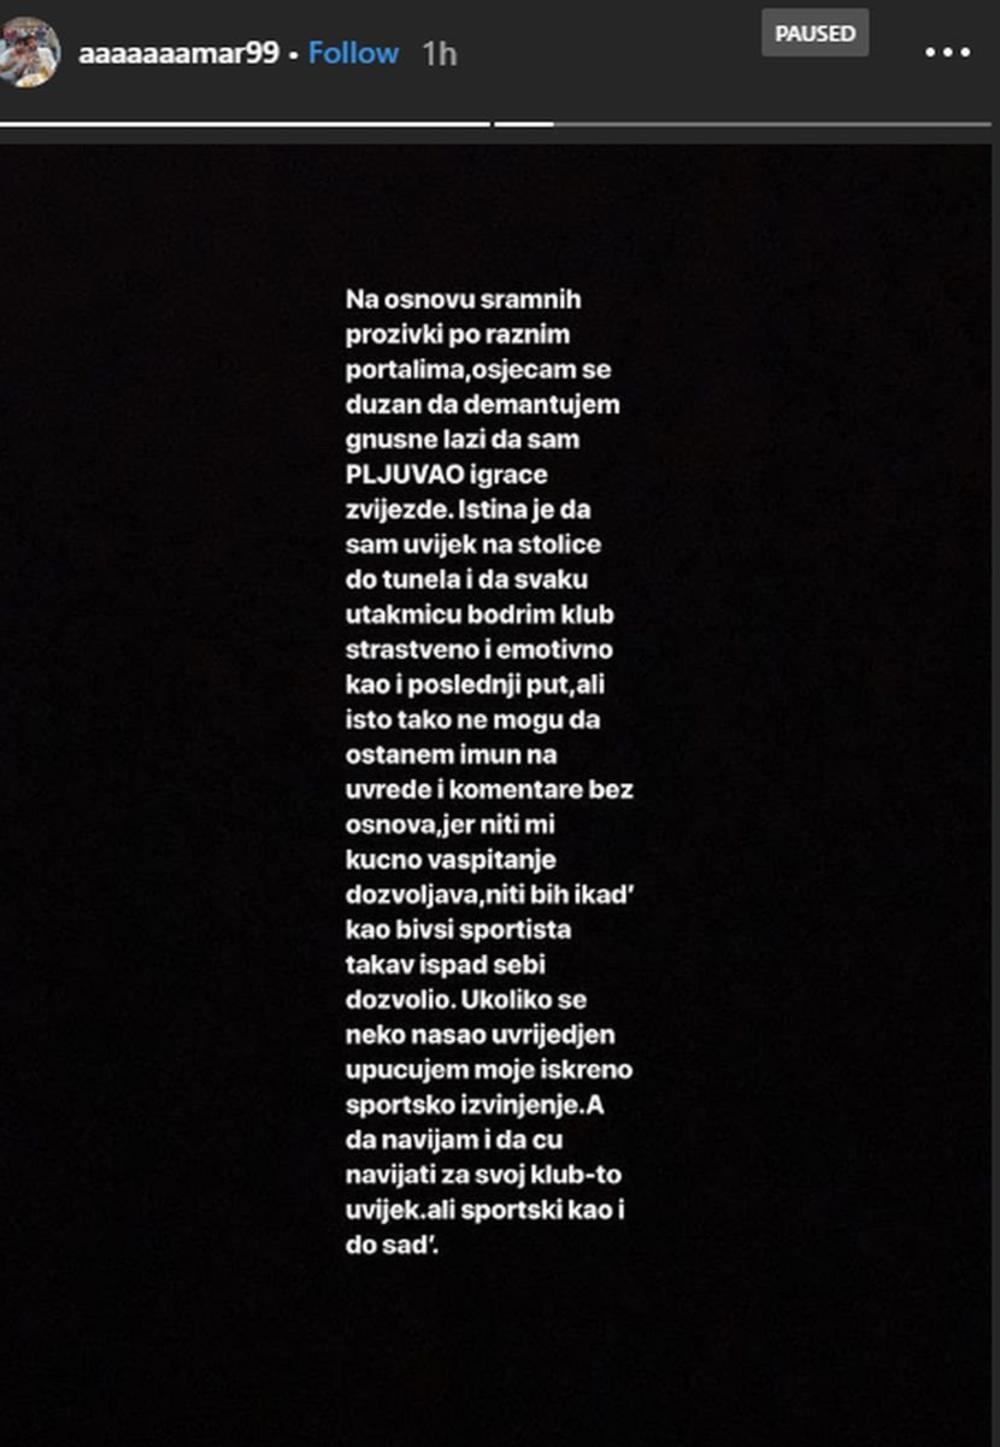 Amar Nuhodžić se oglasio na Instagramu  